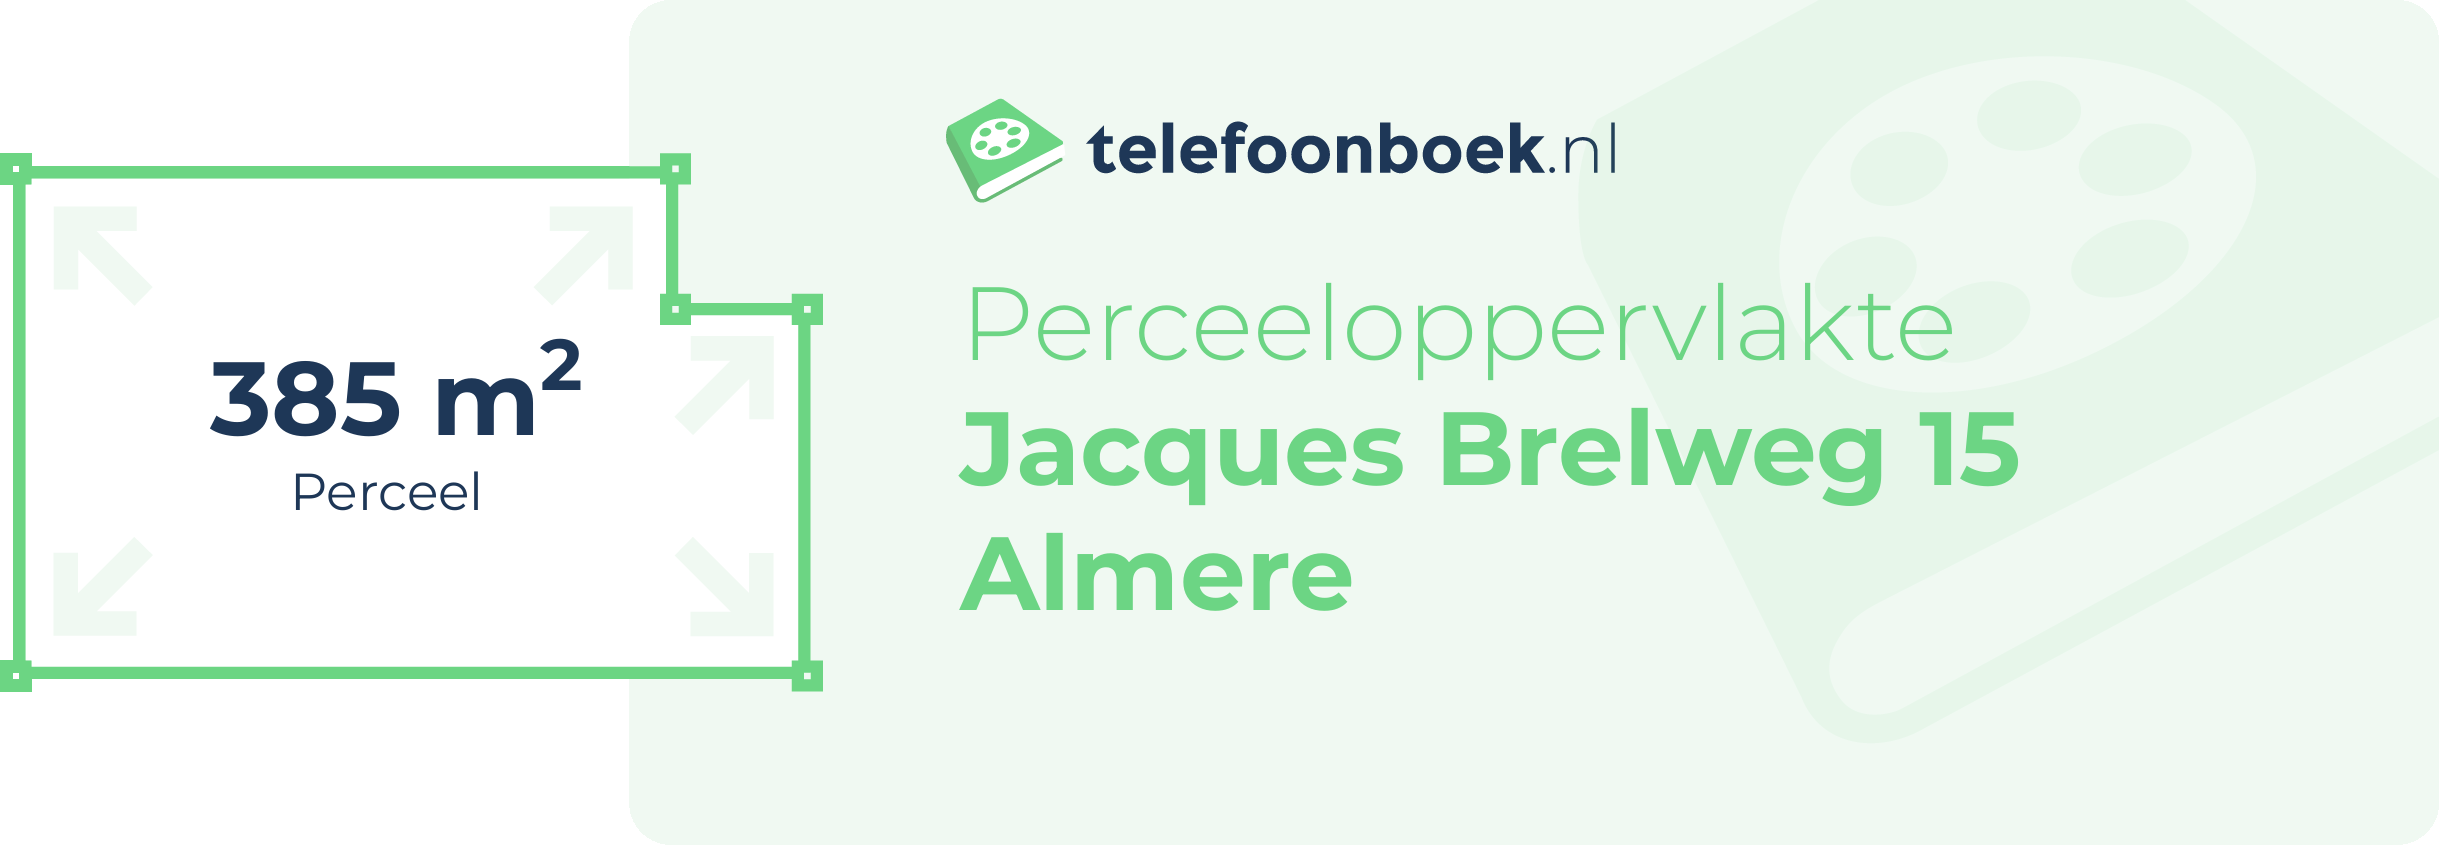 Perceeloppervlakte Jacques Brelweg 15 Almere